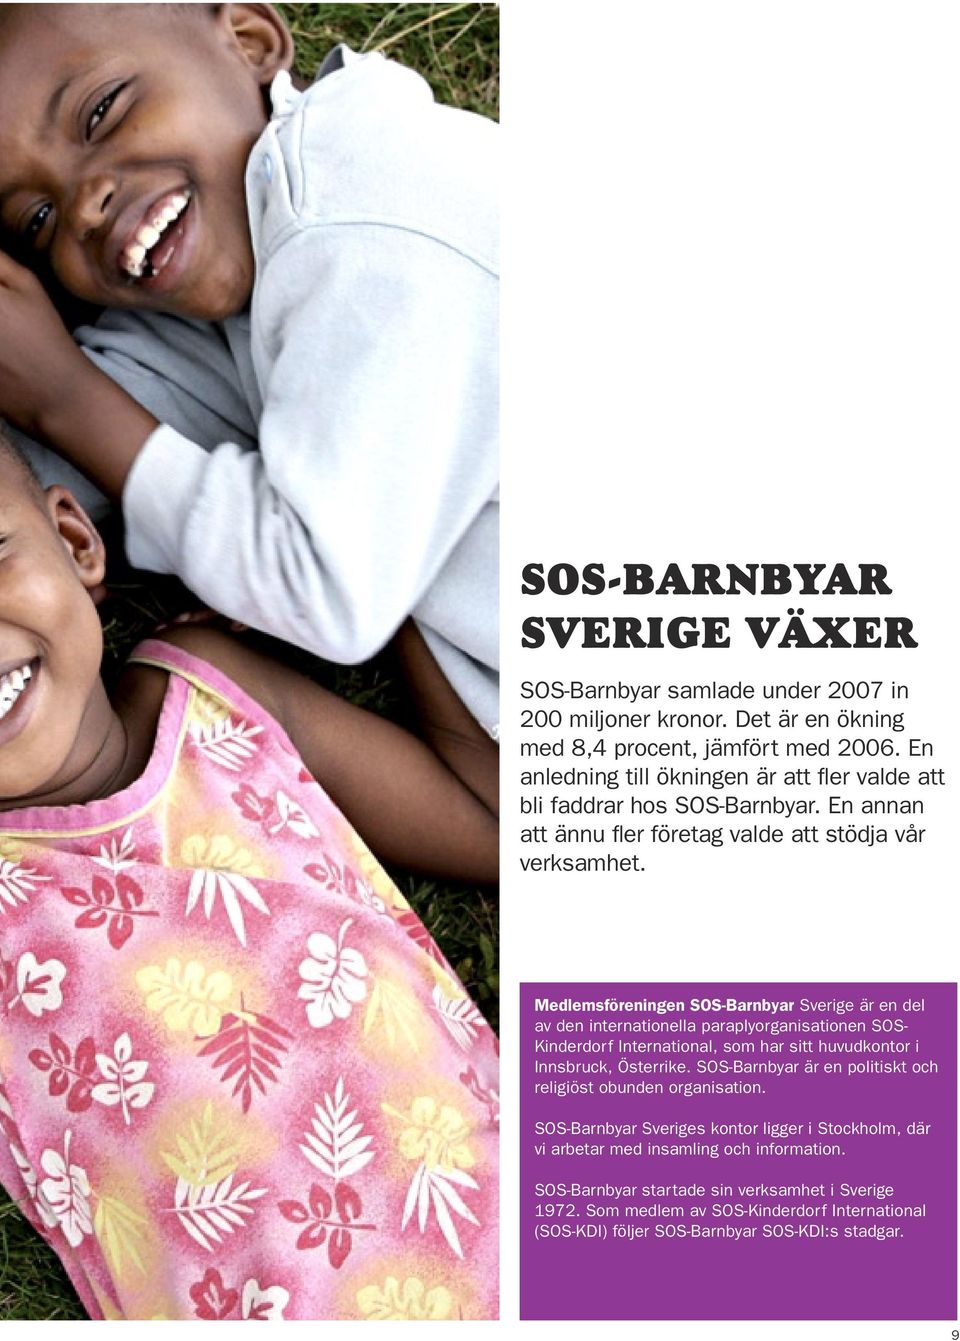 Medlemsföreningen SOS-Barnbyar Sverige är en del av den internationella paraplyorganisationen SOS- Kinderdorf International, som har sitt huvudkontor i Innsbruck, Österrike.